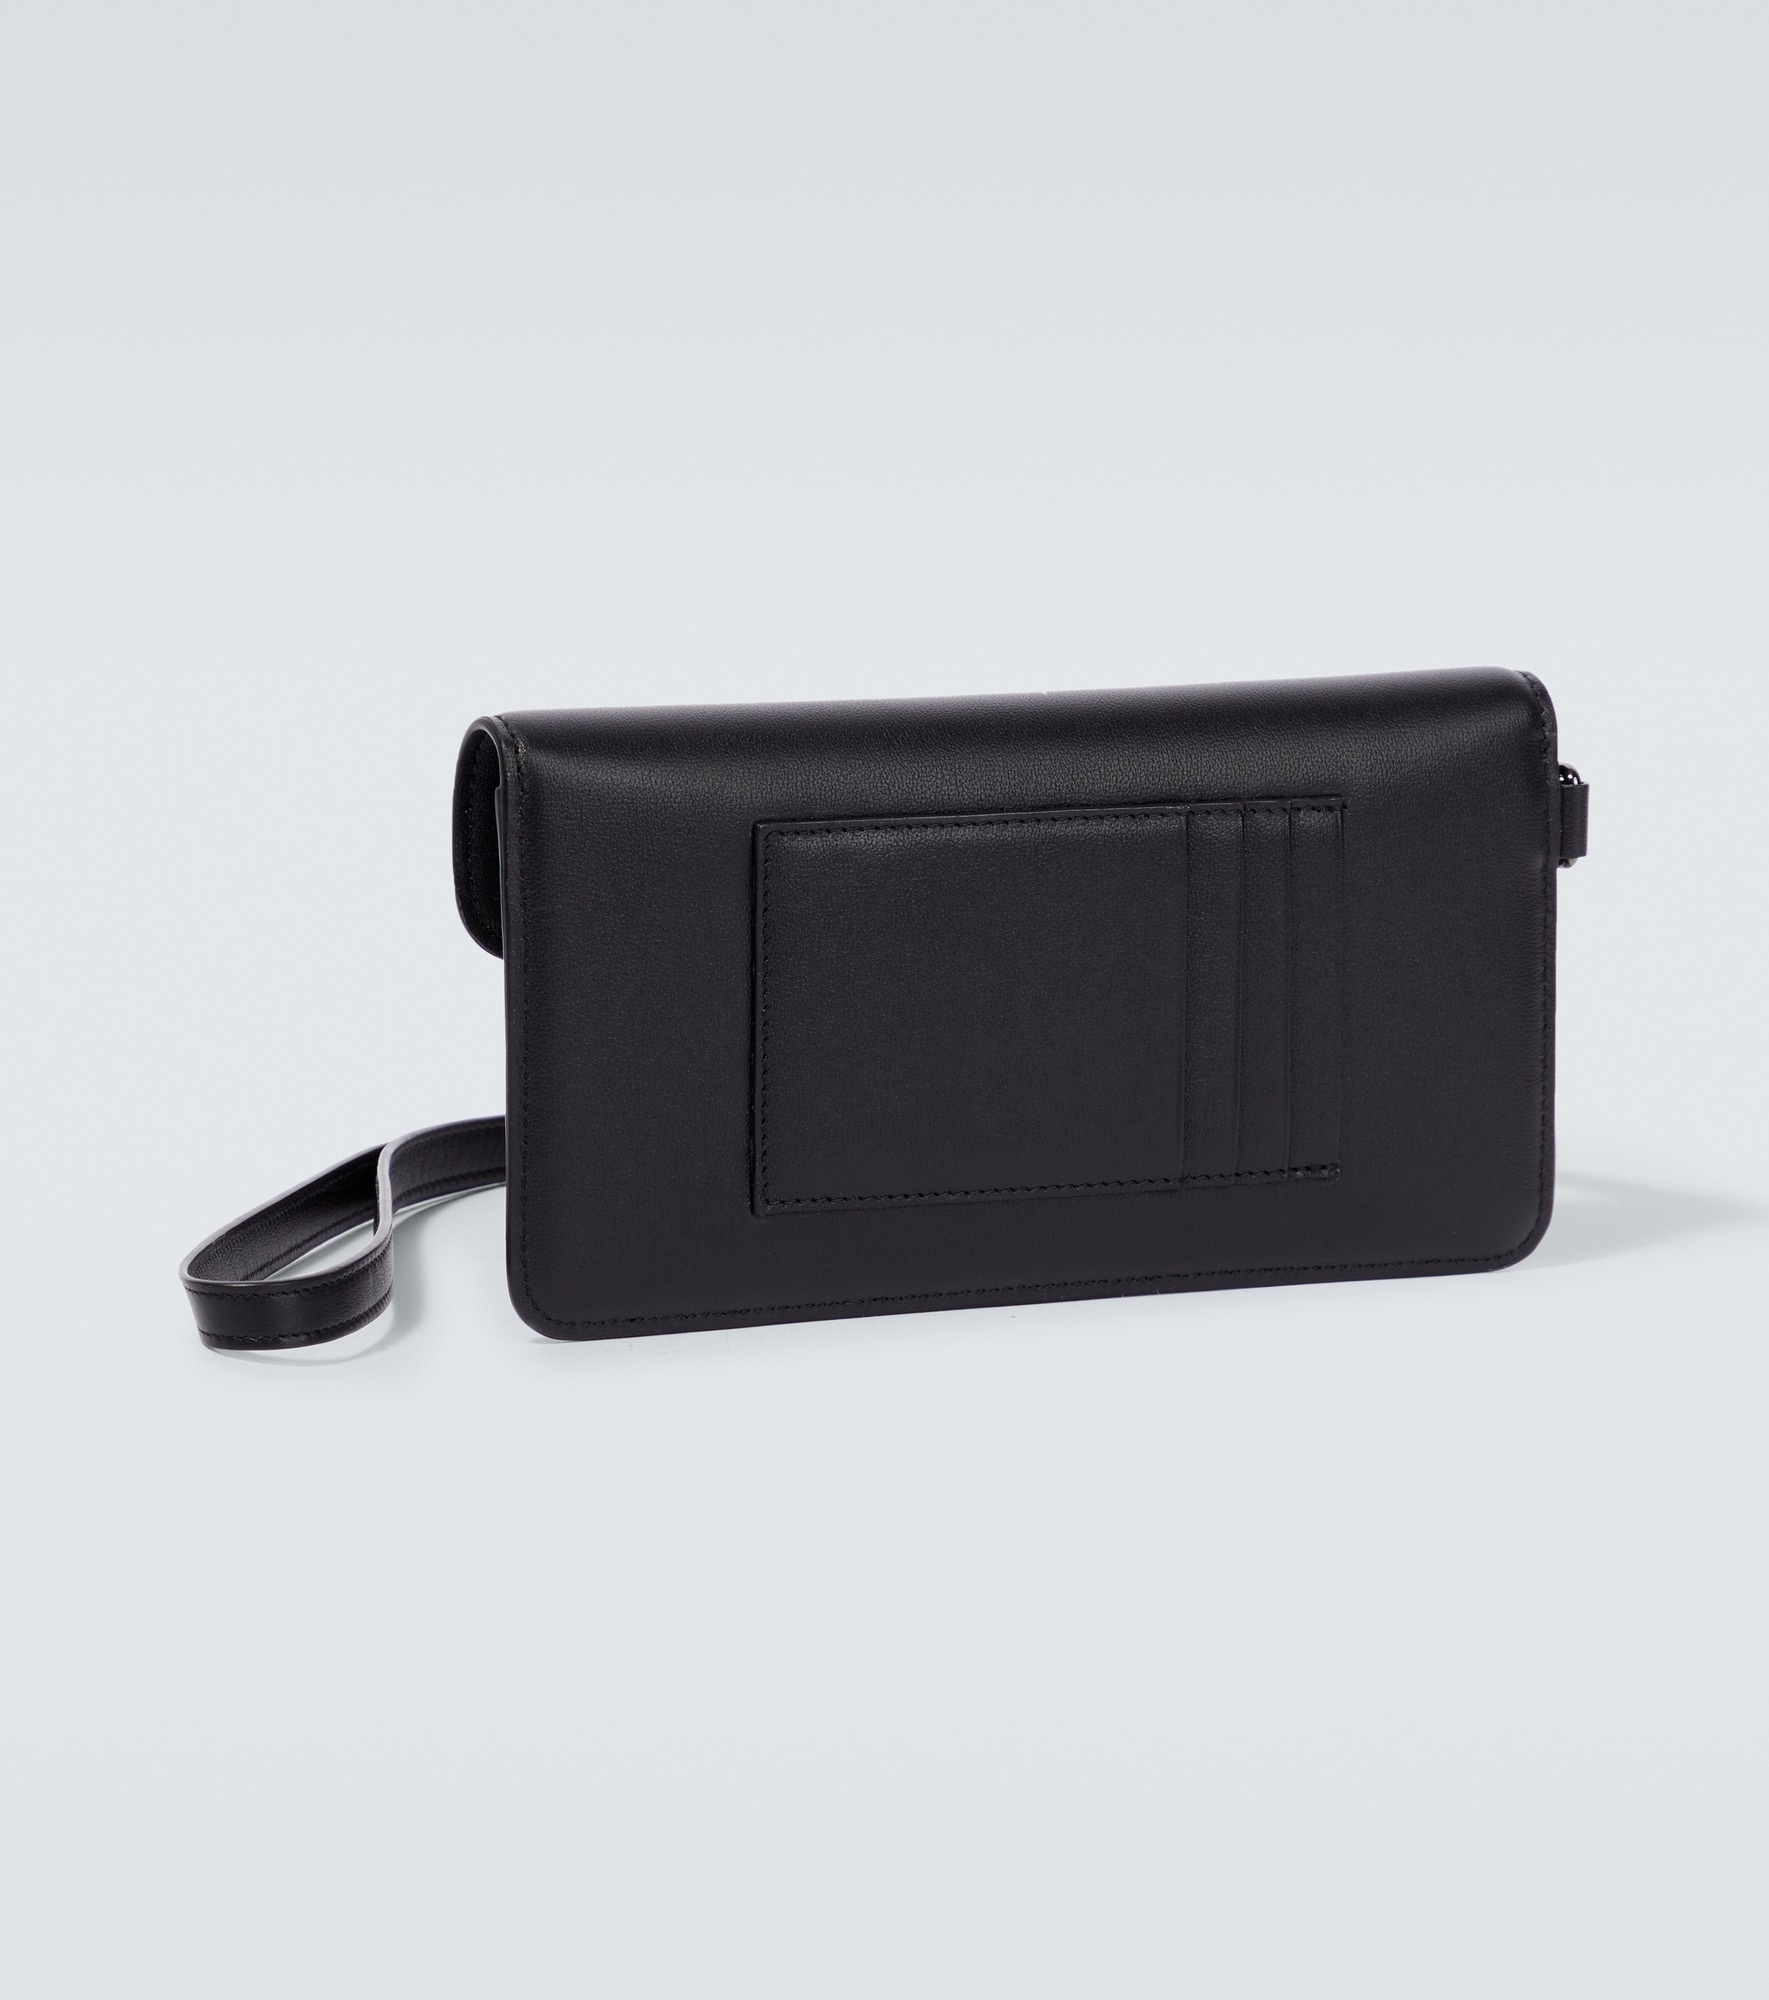 VLogo leather phone case - 3